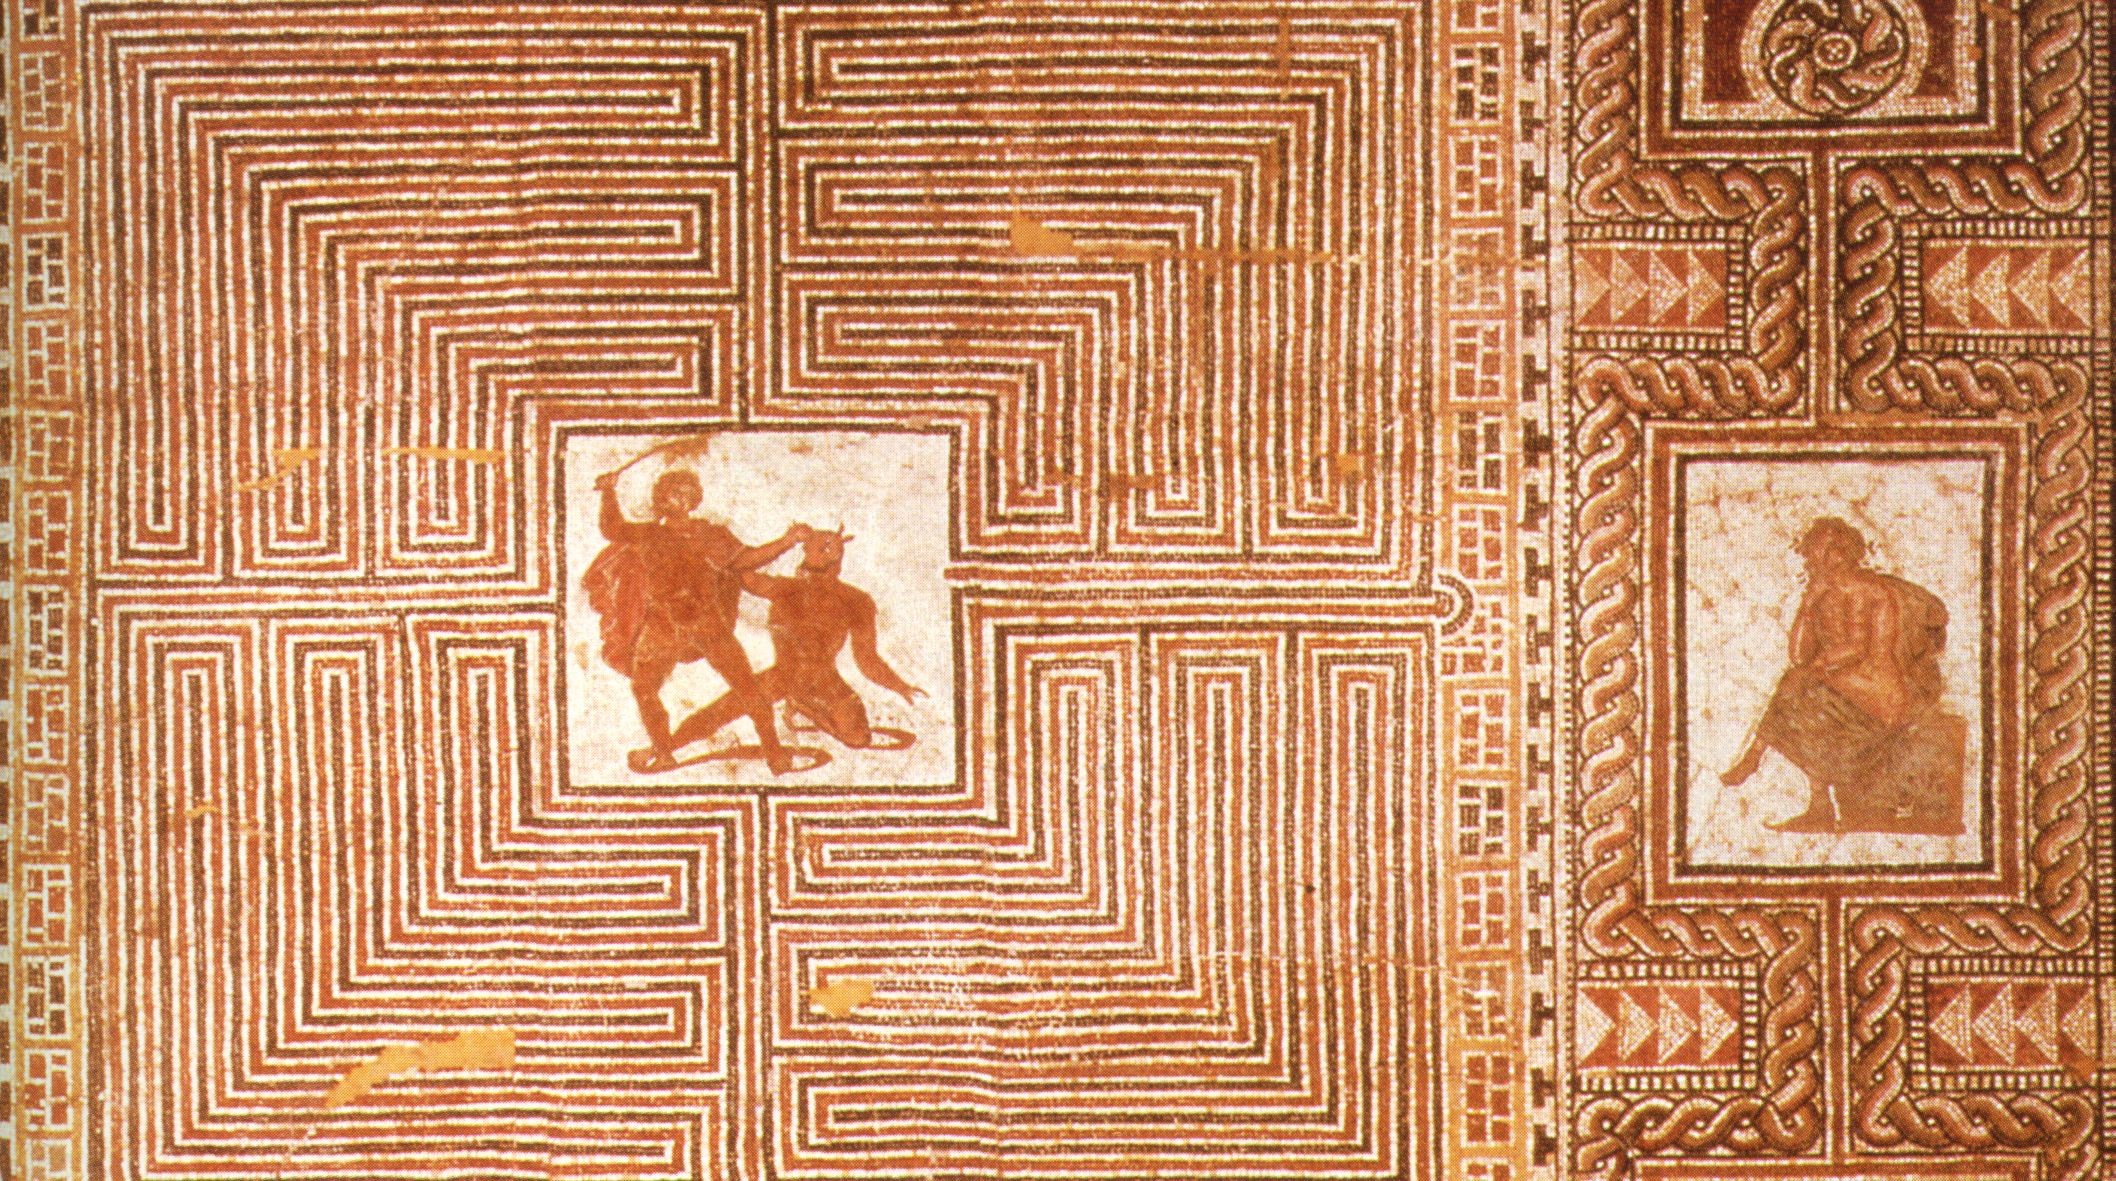 Teseo uccide il Minotauro dentro il Labirinto, Arianna lo aspetta seduta, mosaico, villa romana, Salisburgo